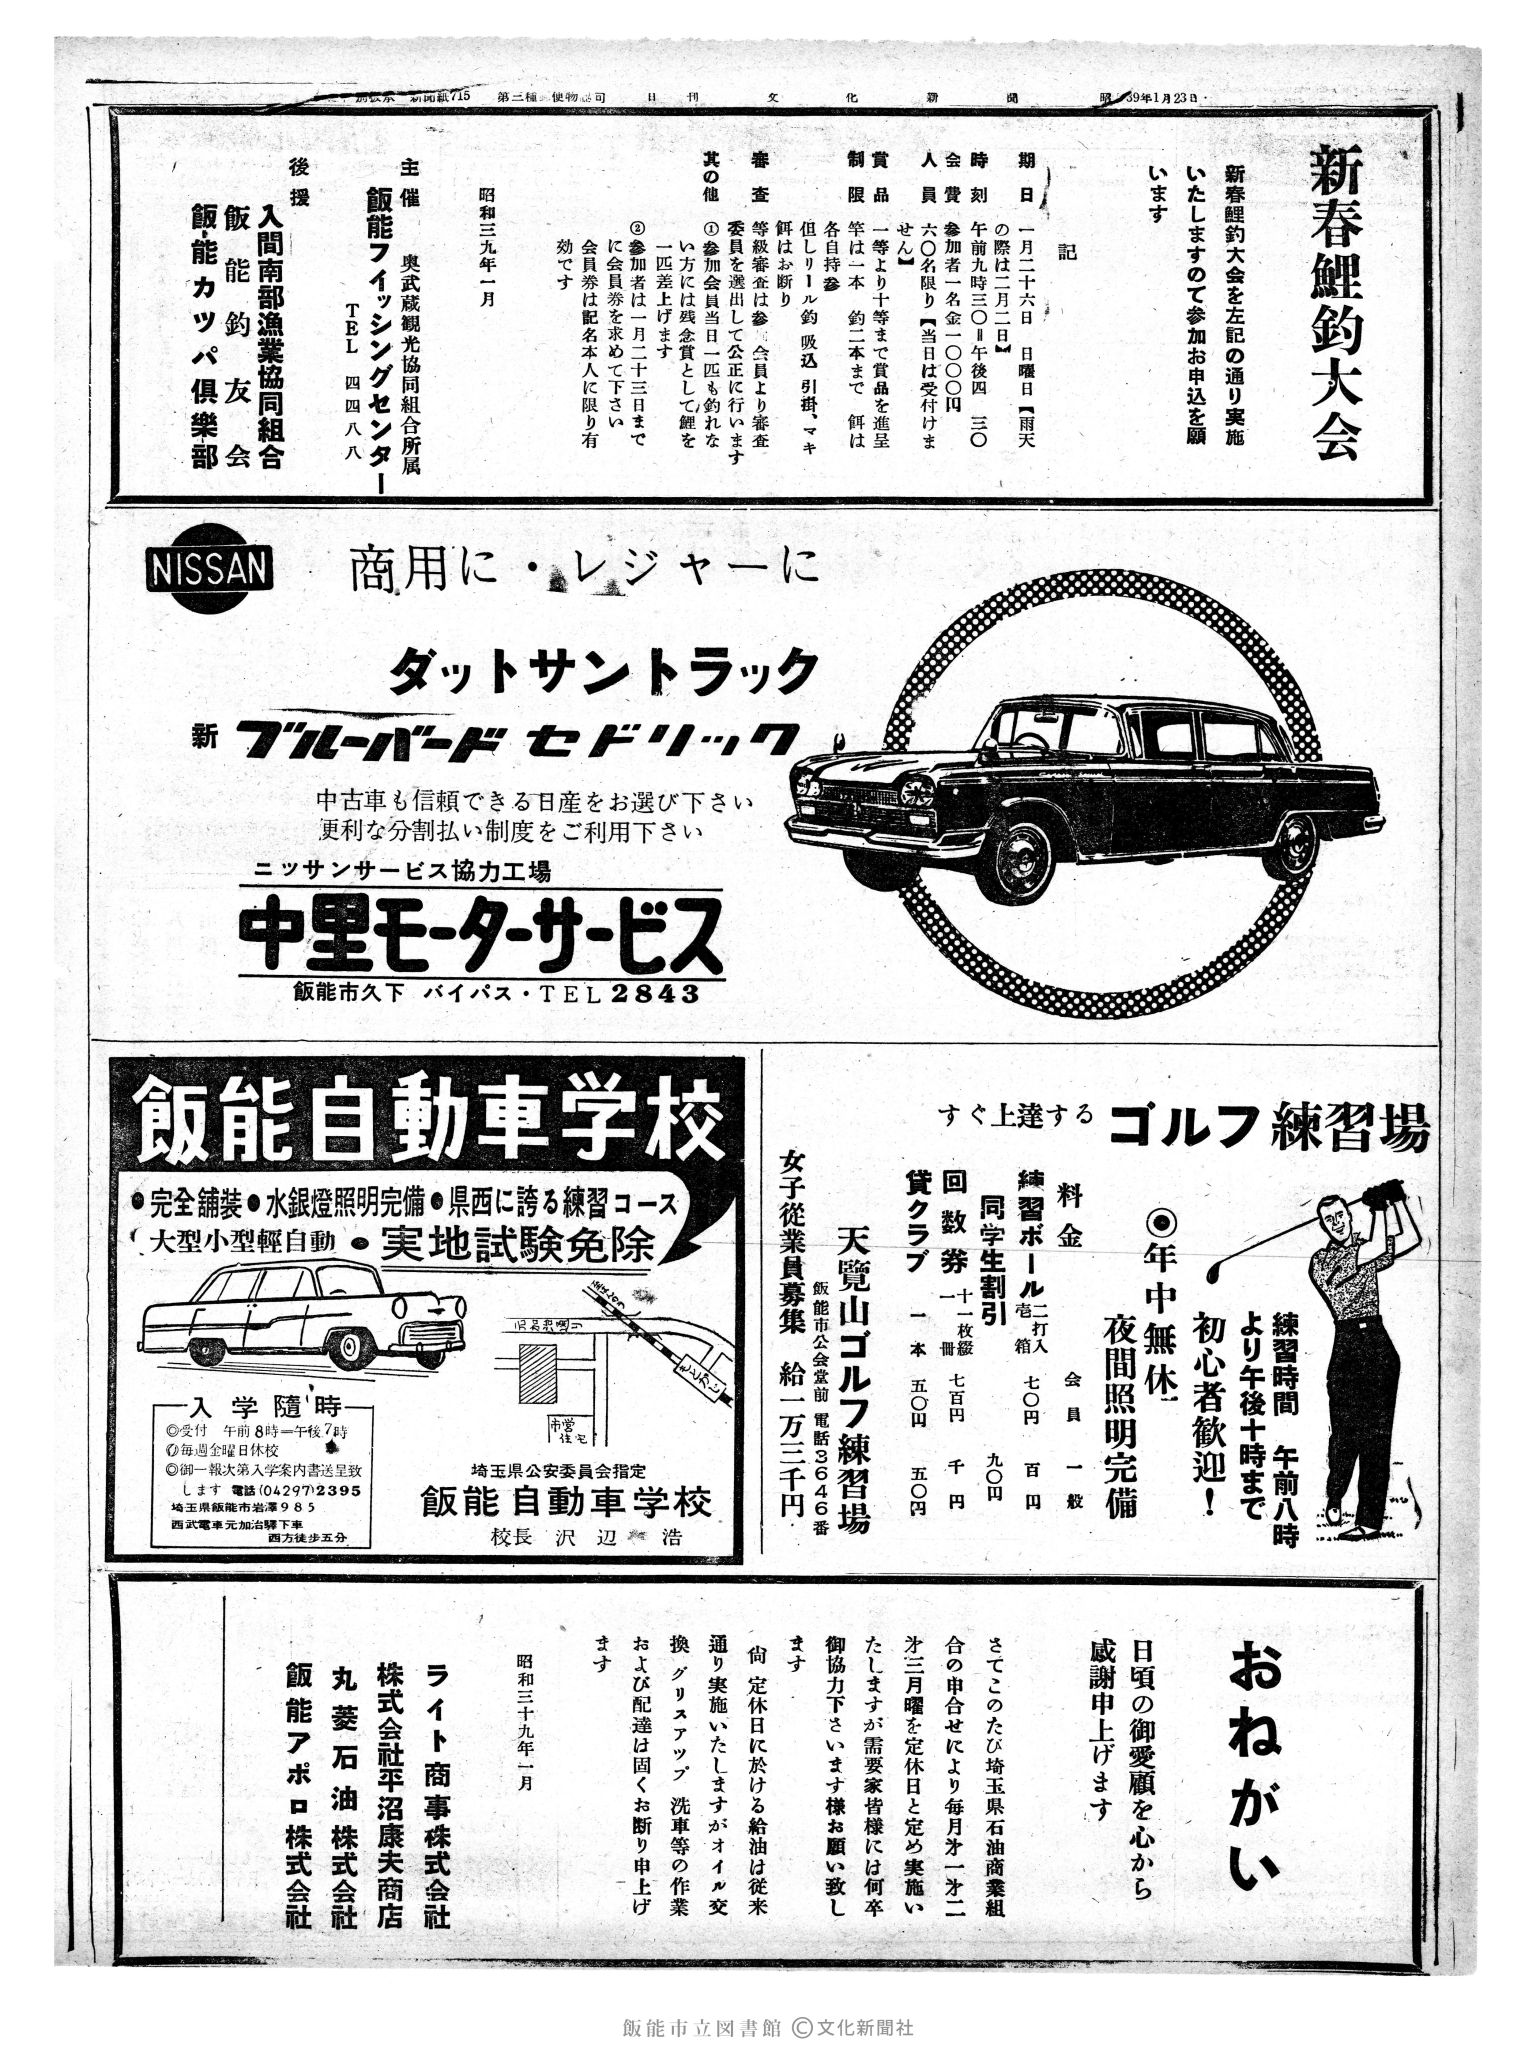 昭和39年1月23日2面 (第4673号) 広告ページ